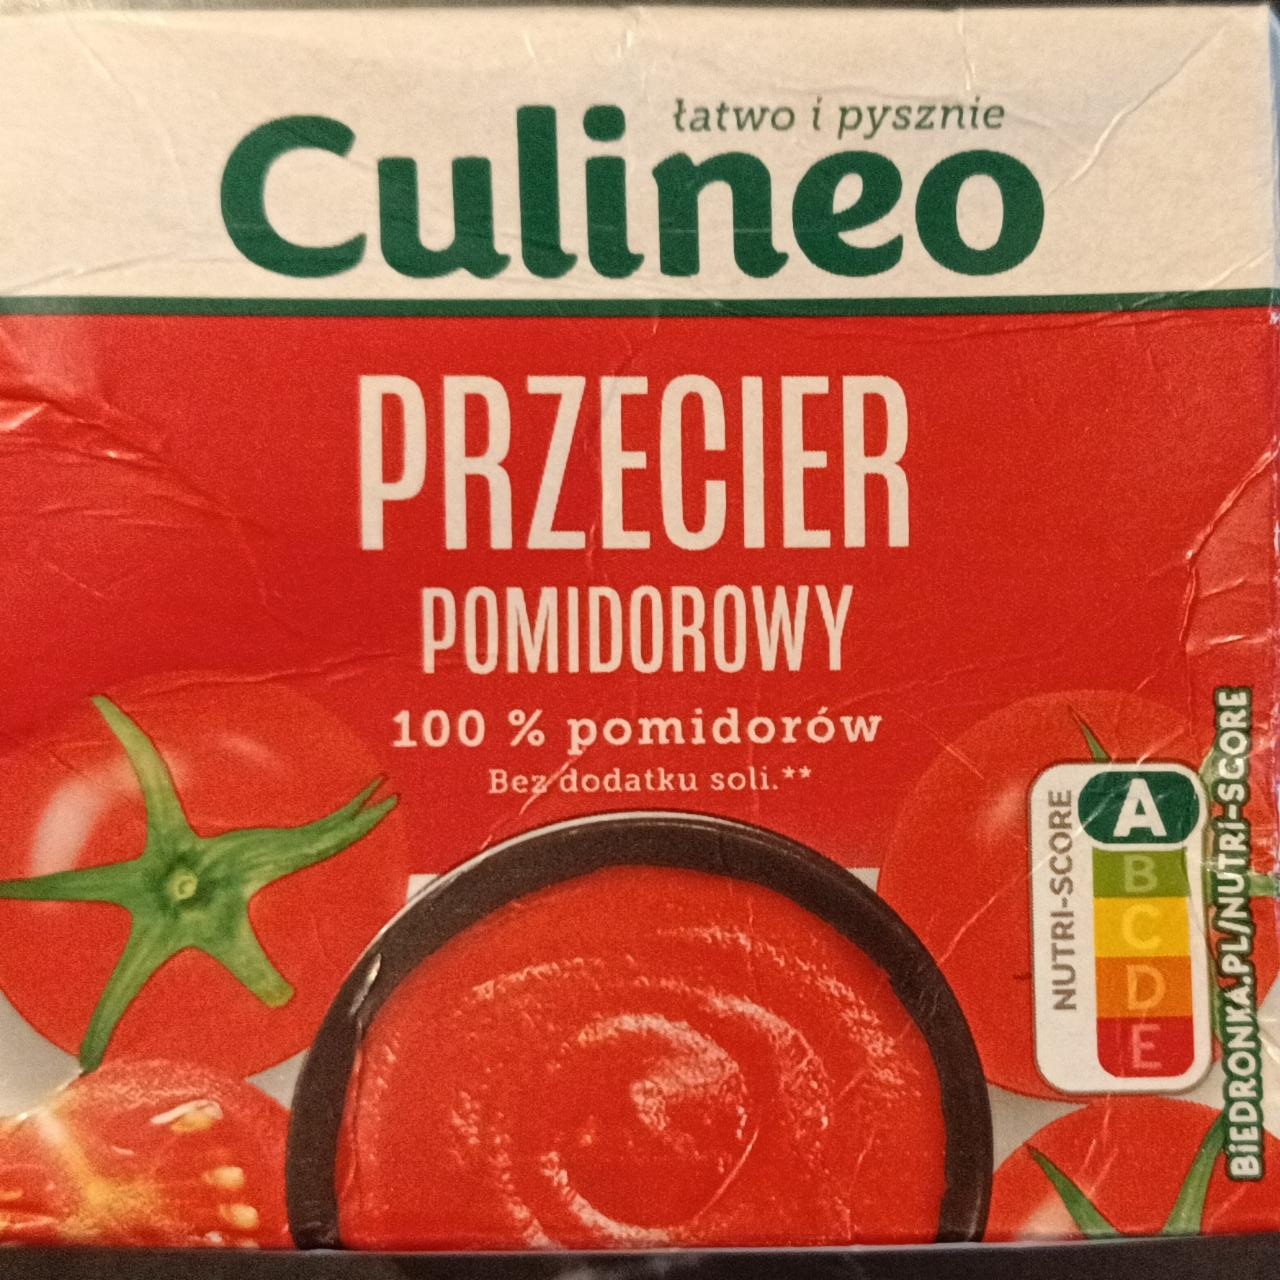 Fotografie - Przecier pomidorowy Culineo